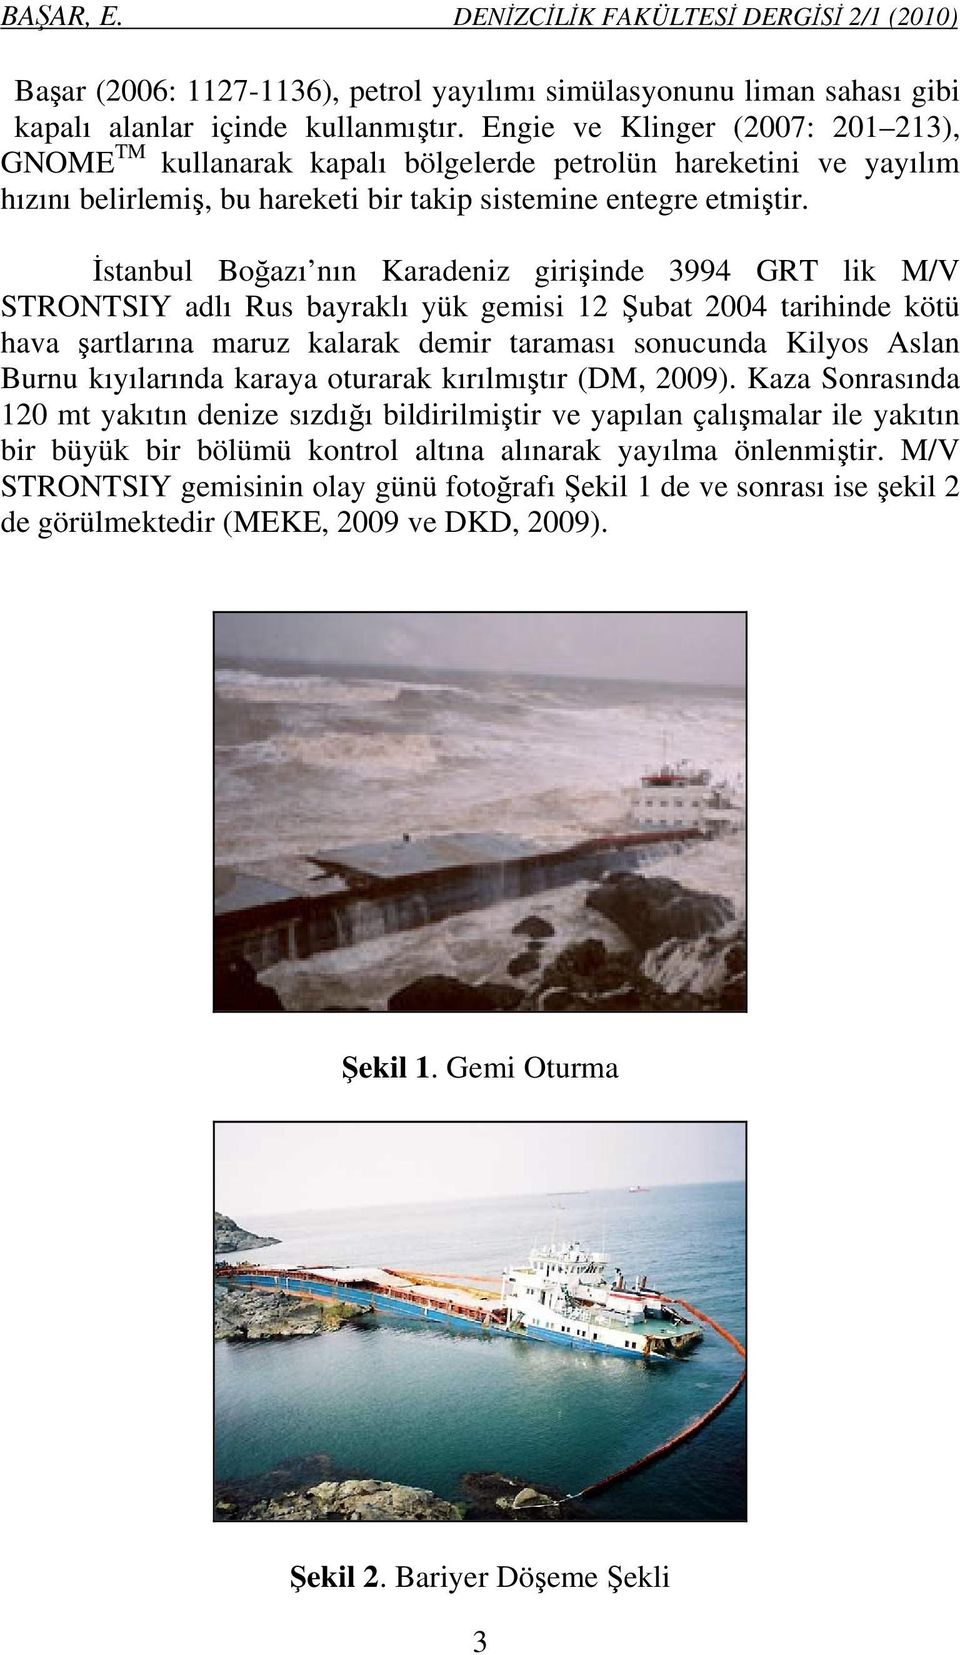 İstanbul Boğazı nın Karadeniz girişinde 3994 GRT lik M/V STRONTSIY adlı Rus bayraklı yük gemisi 12 Şubat 2004 tarihinde kötü hava şartlarına maruz kalarak demir taraması sonucunda Kilyos Aslan Burnu